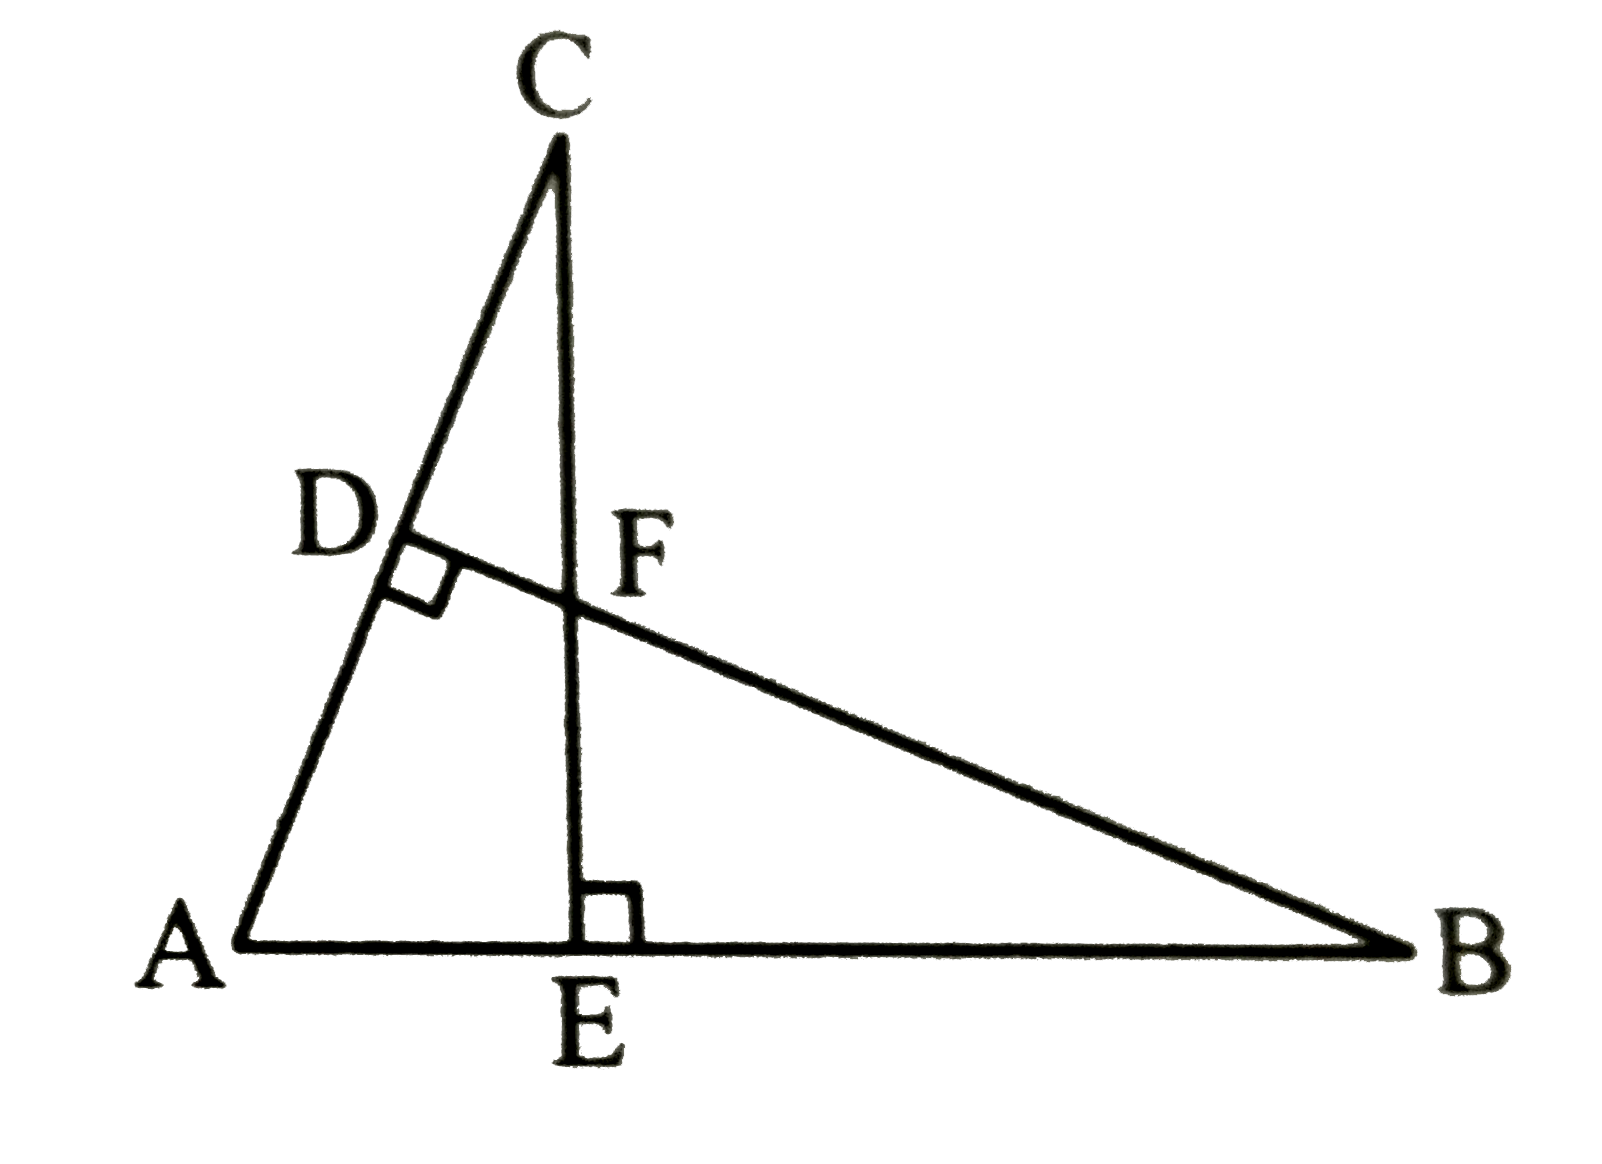 दी गई आकृति में, यदि BD bot AC तथा CE bot AB है तो सिद्ध कीजिए :      (i) triangleAEC ~ triangleADB   (ii) (CA)/(AB) = (CE)/(DB)